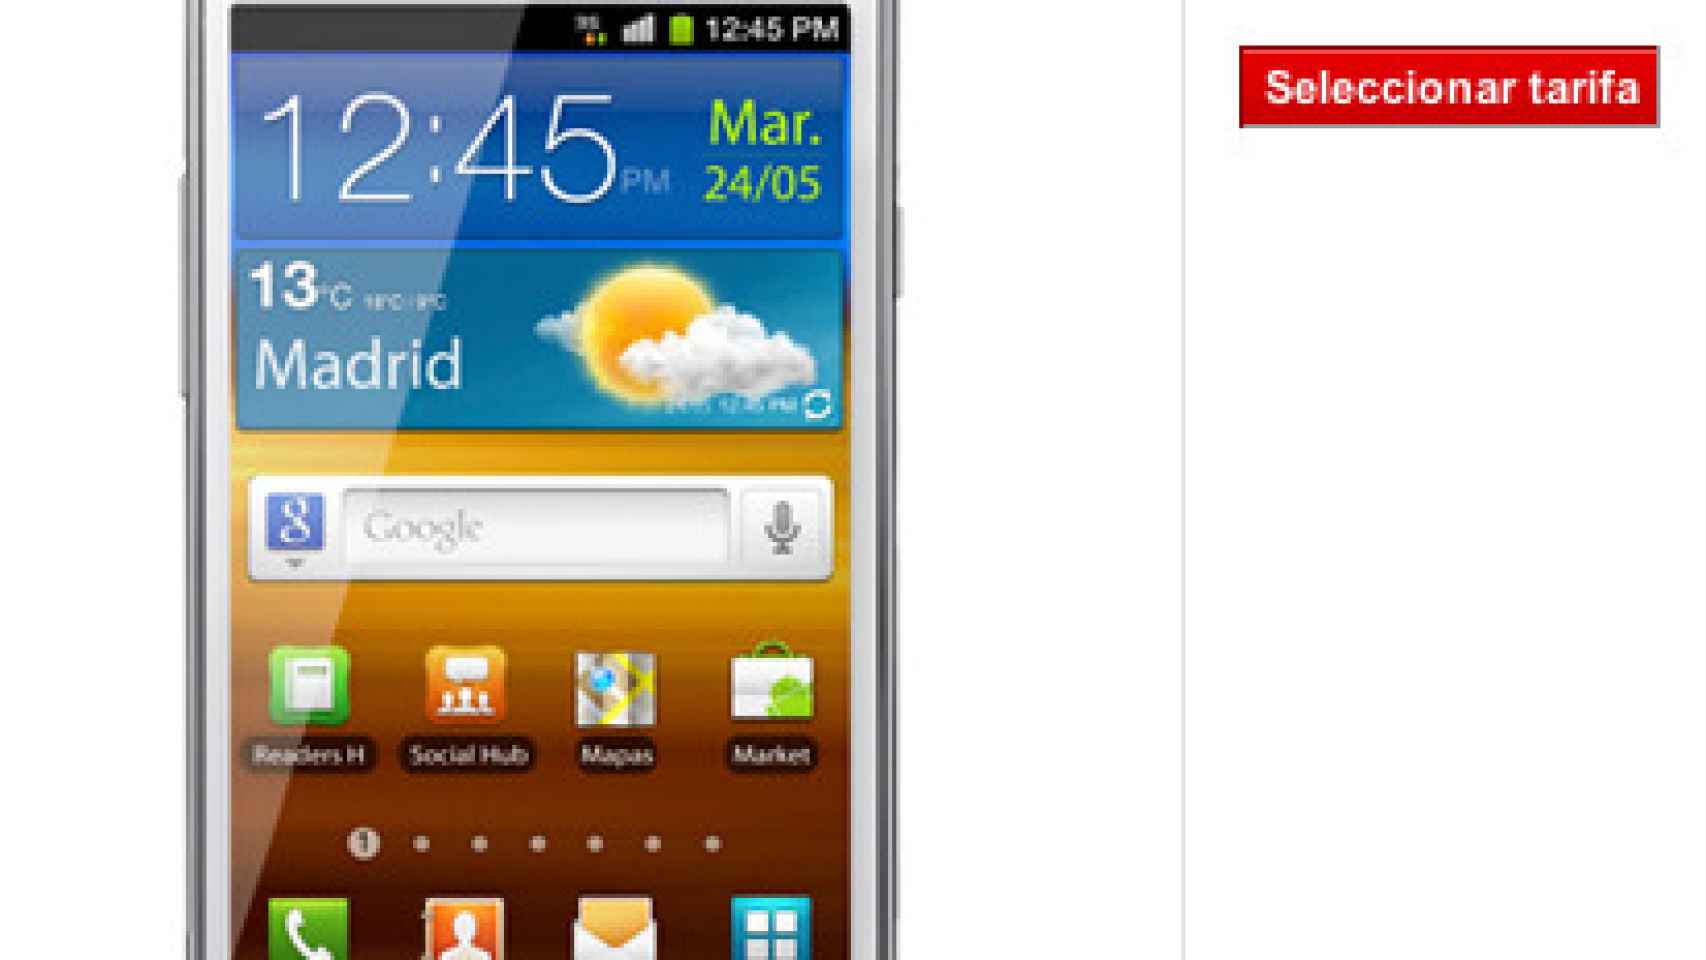 Samsung Galaxy SII Blanco en Vodafone: Listado de Precios y Puntos